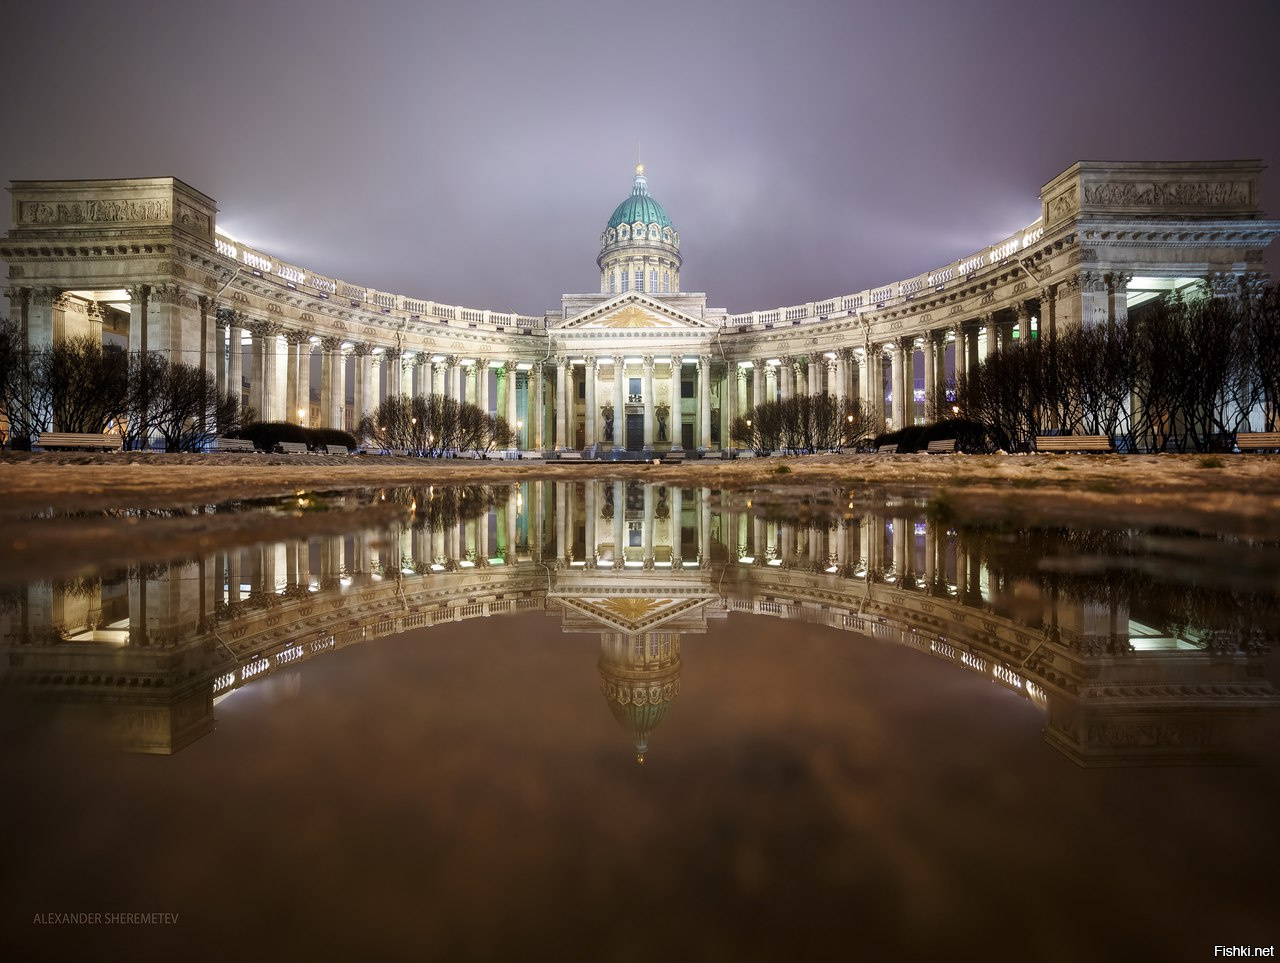 Казанский собор в Санкт-Петербурге отражение